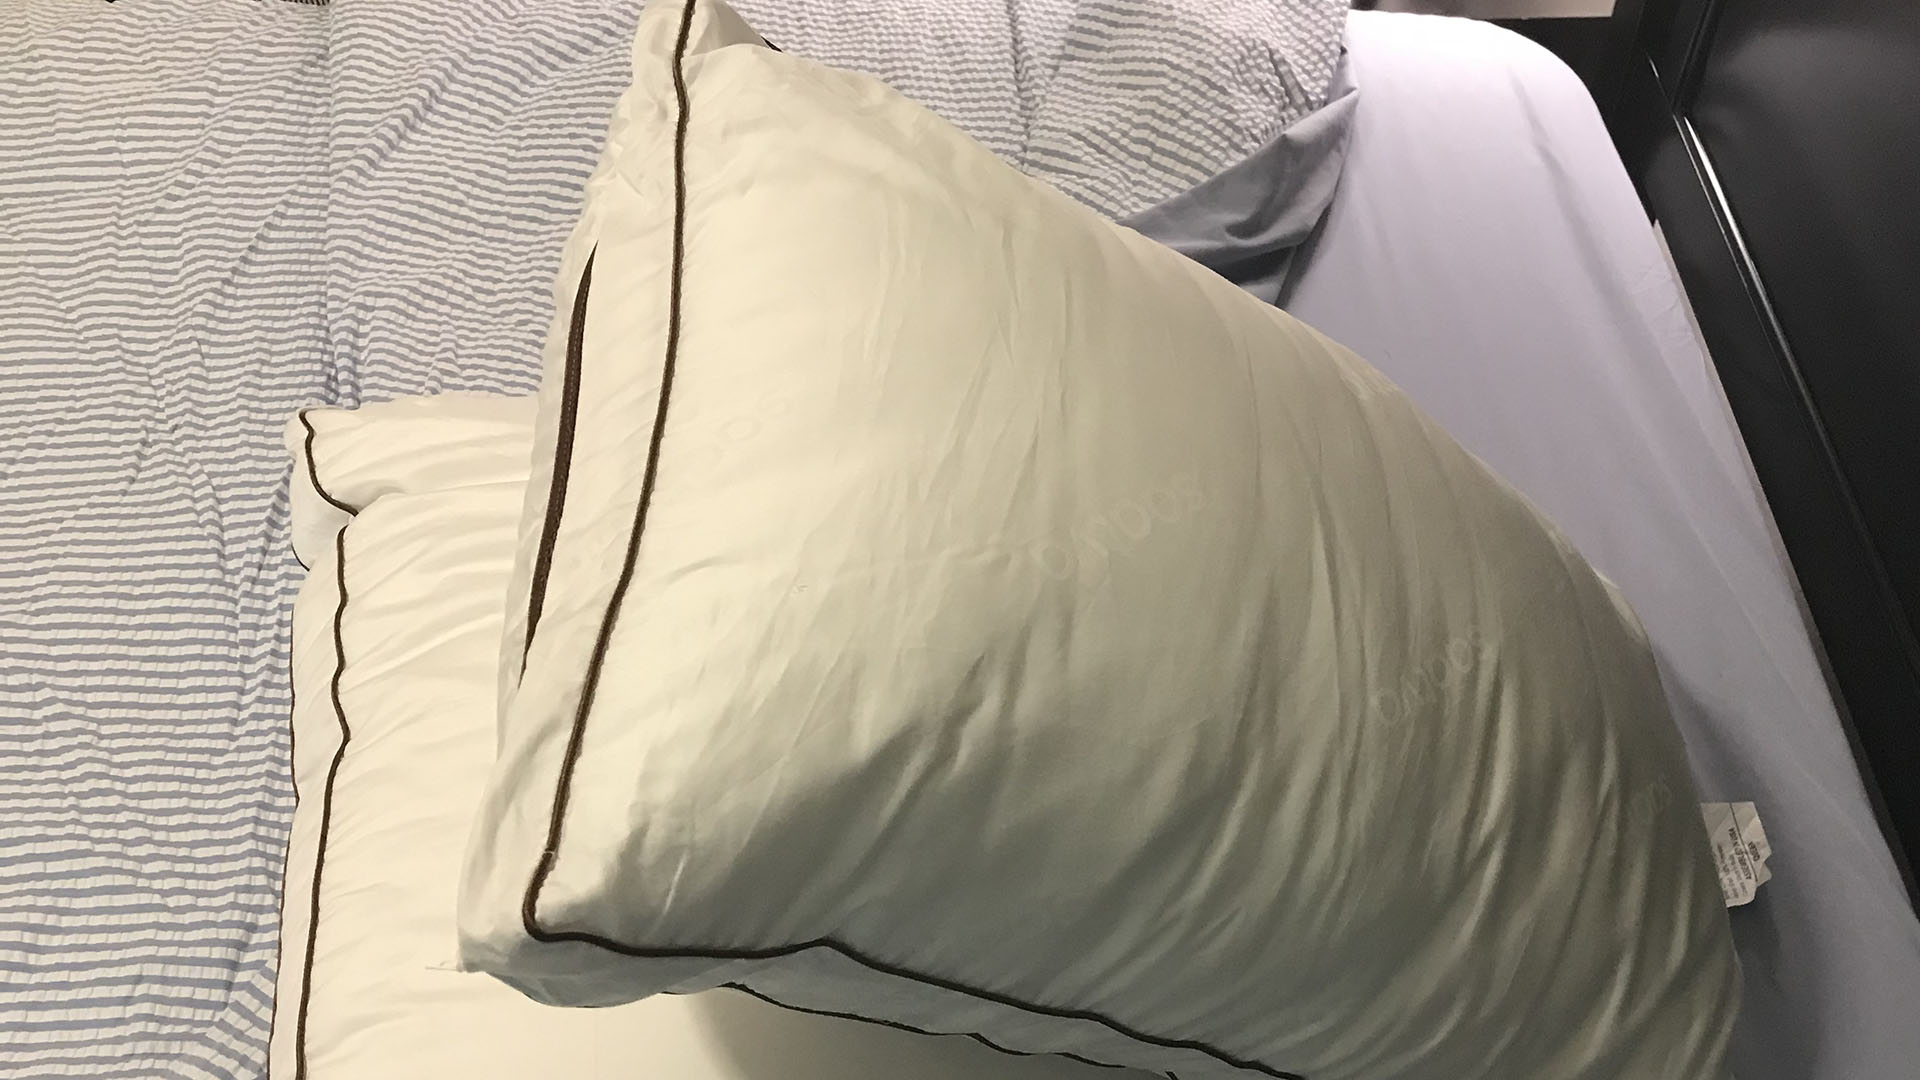 Saatva Latex pillow in reviewer's bedroom